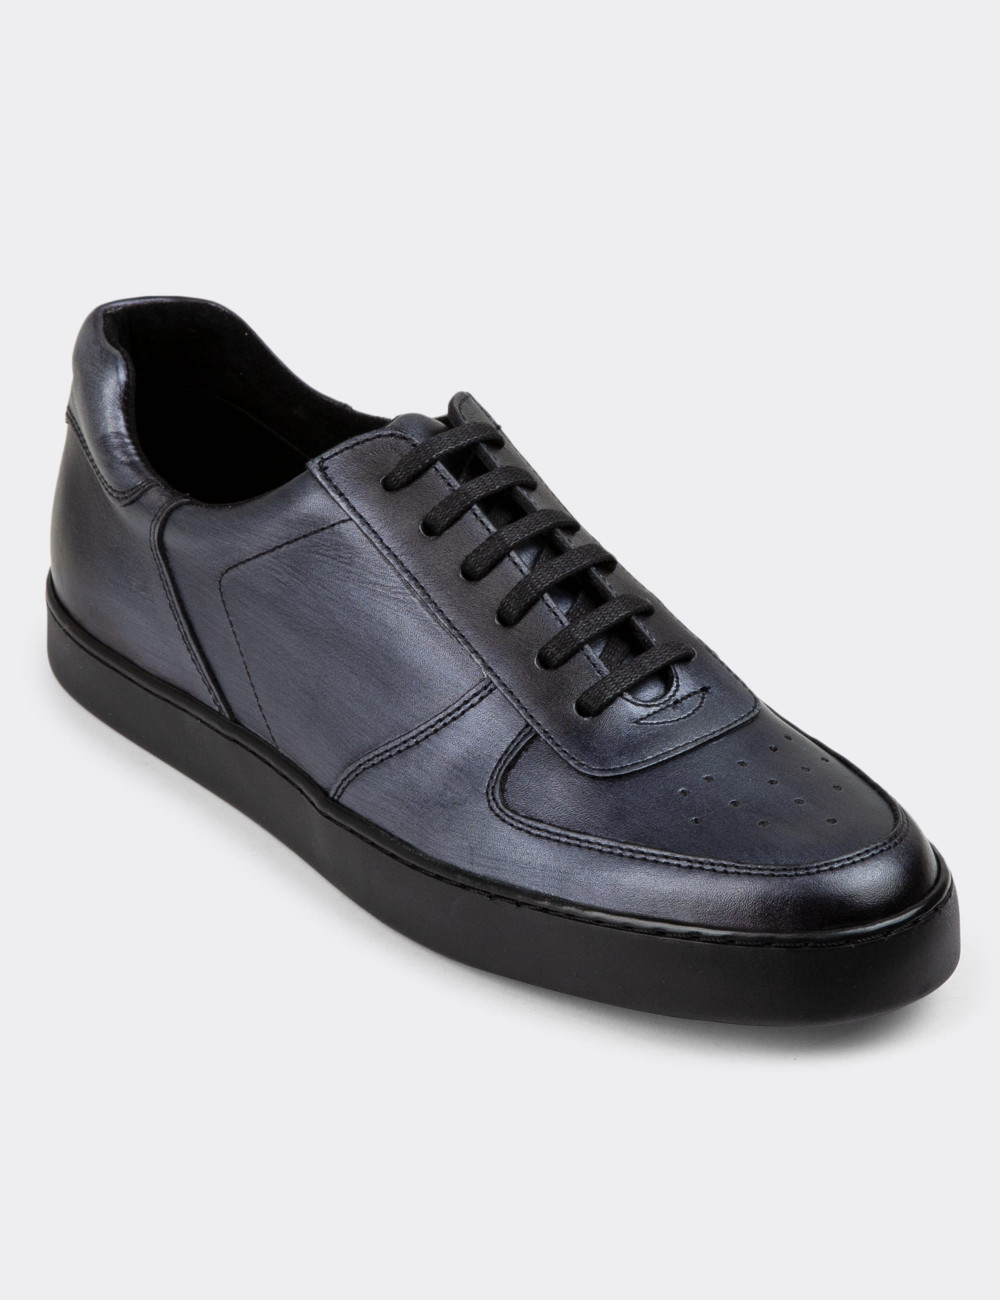 Hakiki Deri Antrasit Sneaker Erkek Ayakkabı - 01880MANTC01